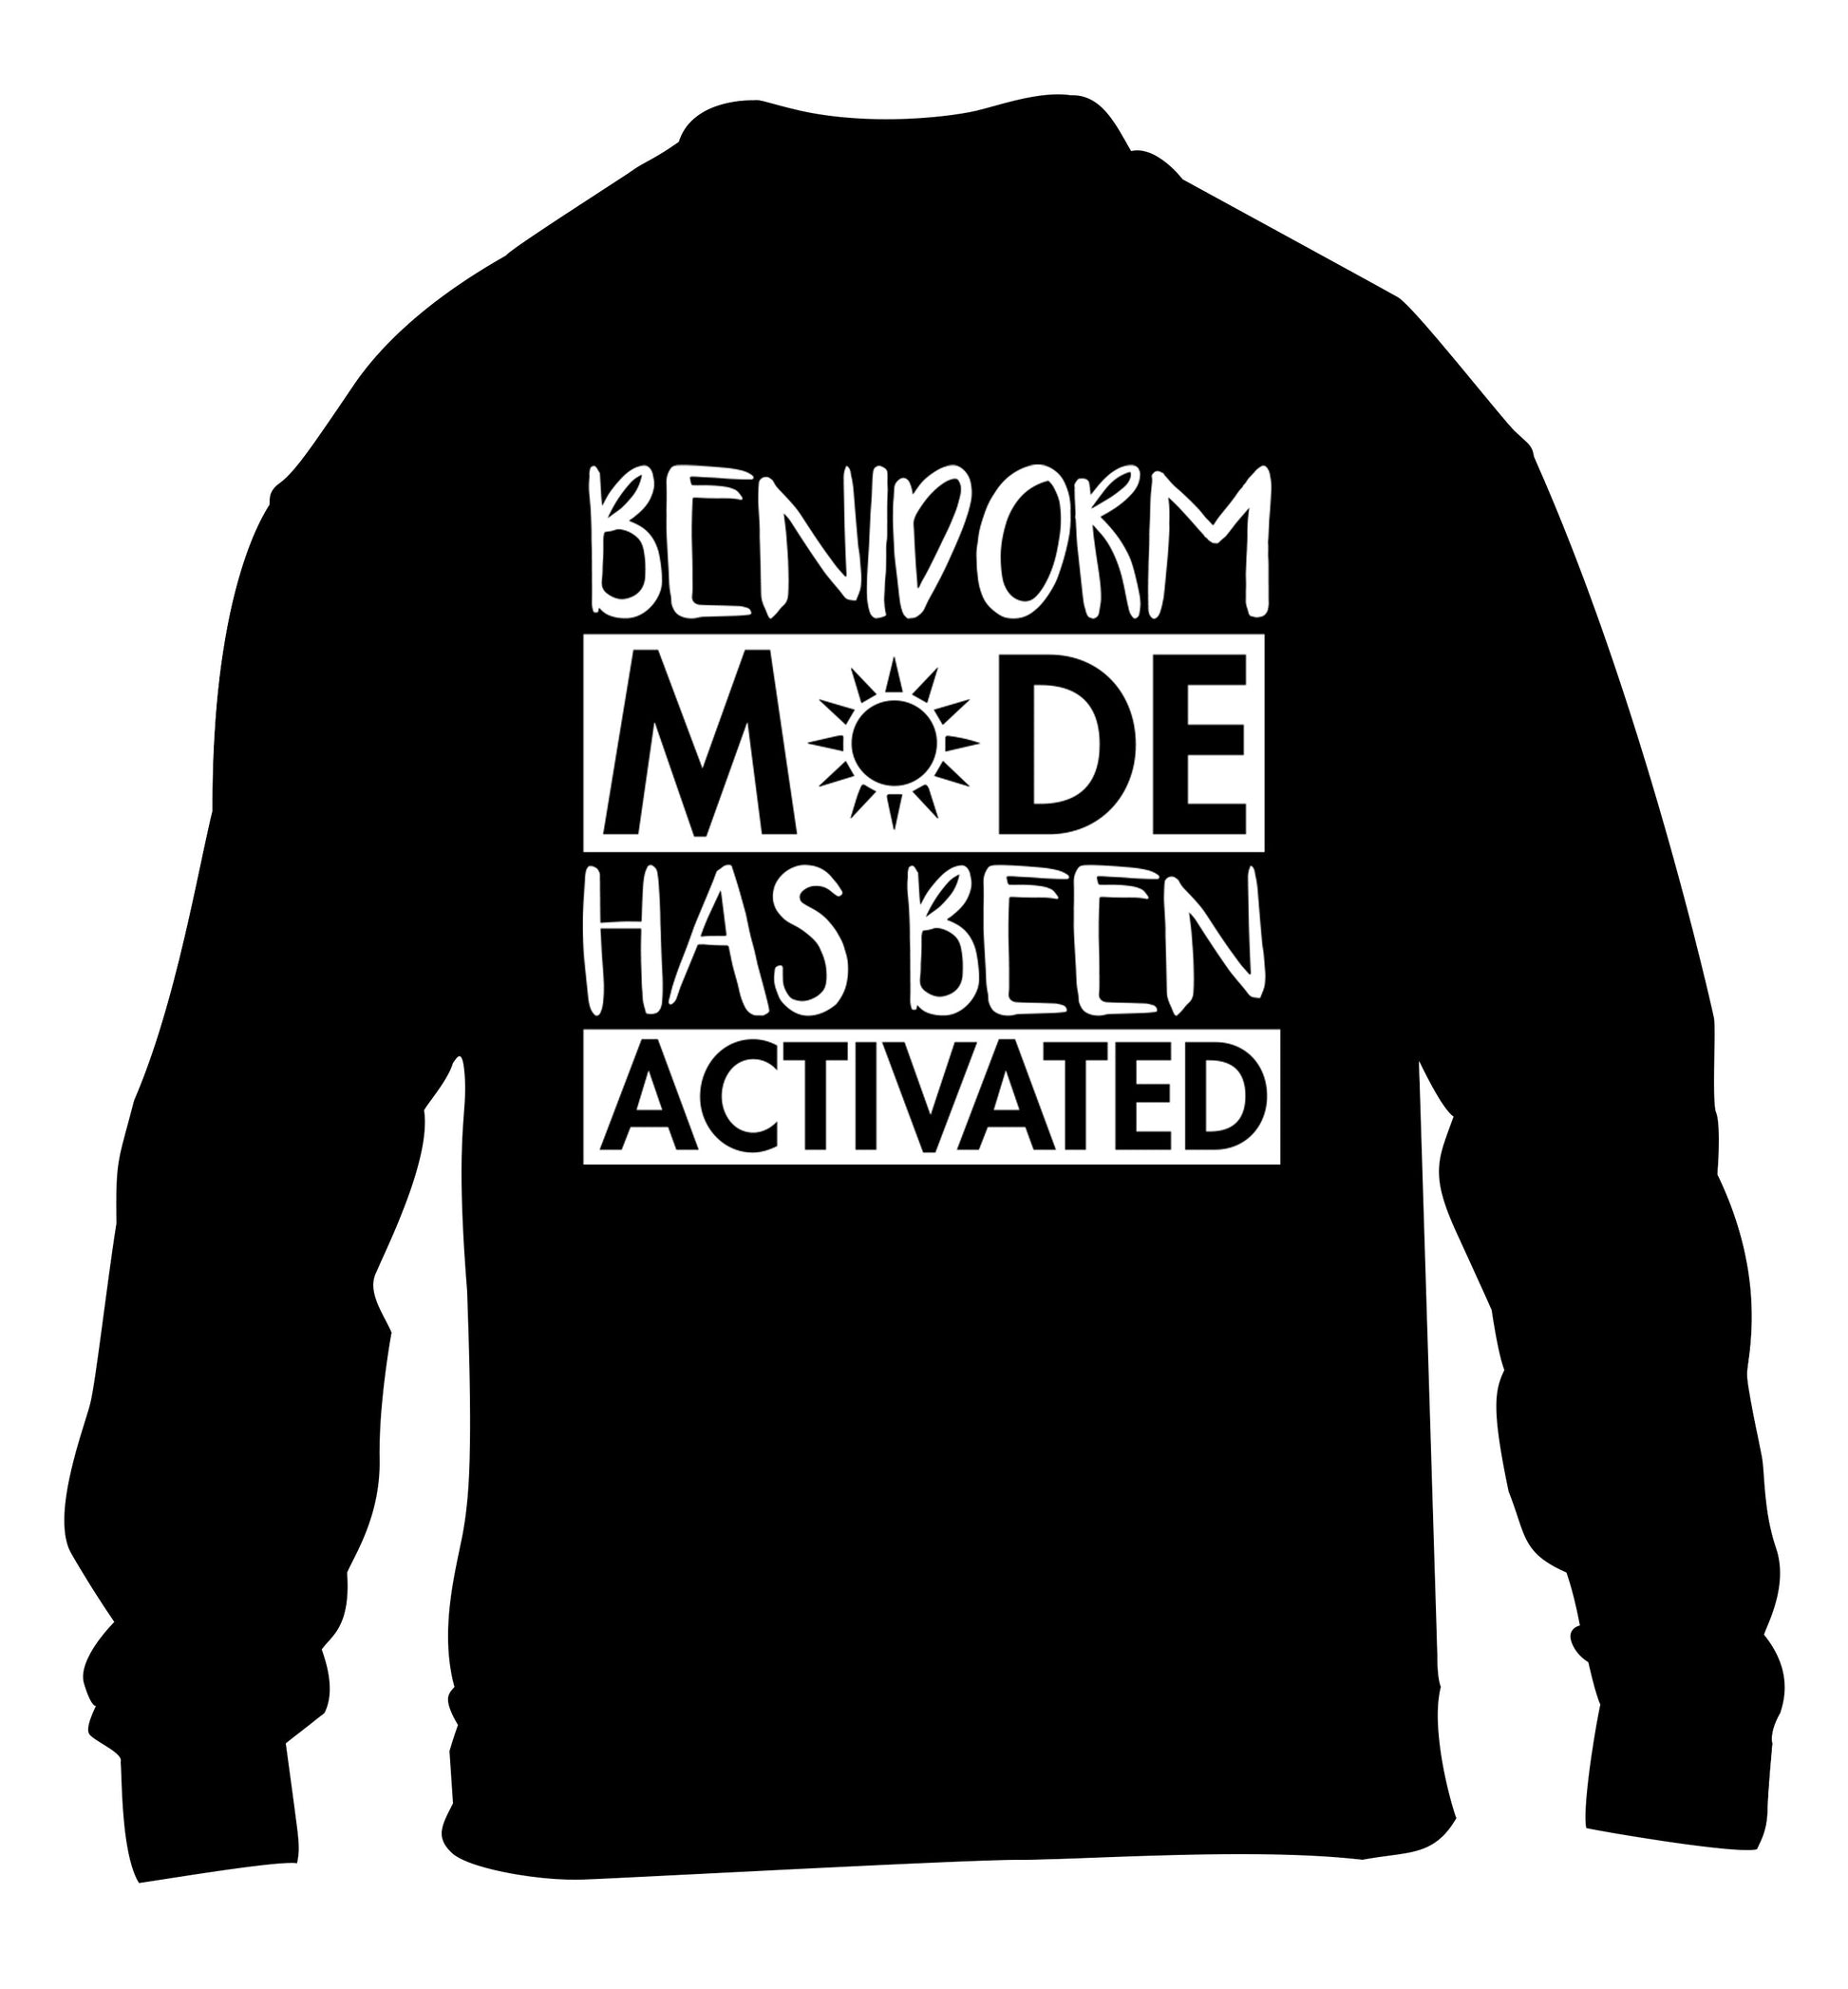 Benidorm mode has been activated children's black sweater 12-14 Years